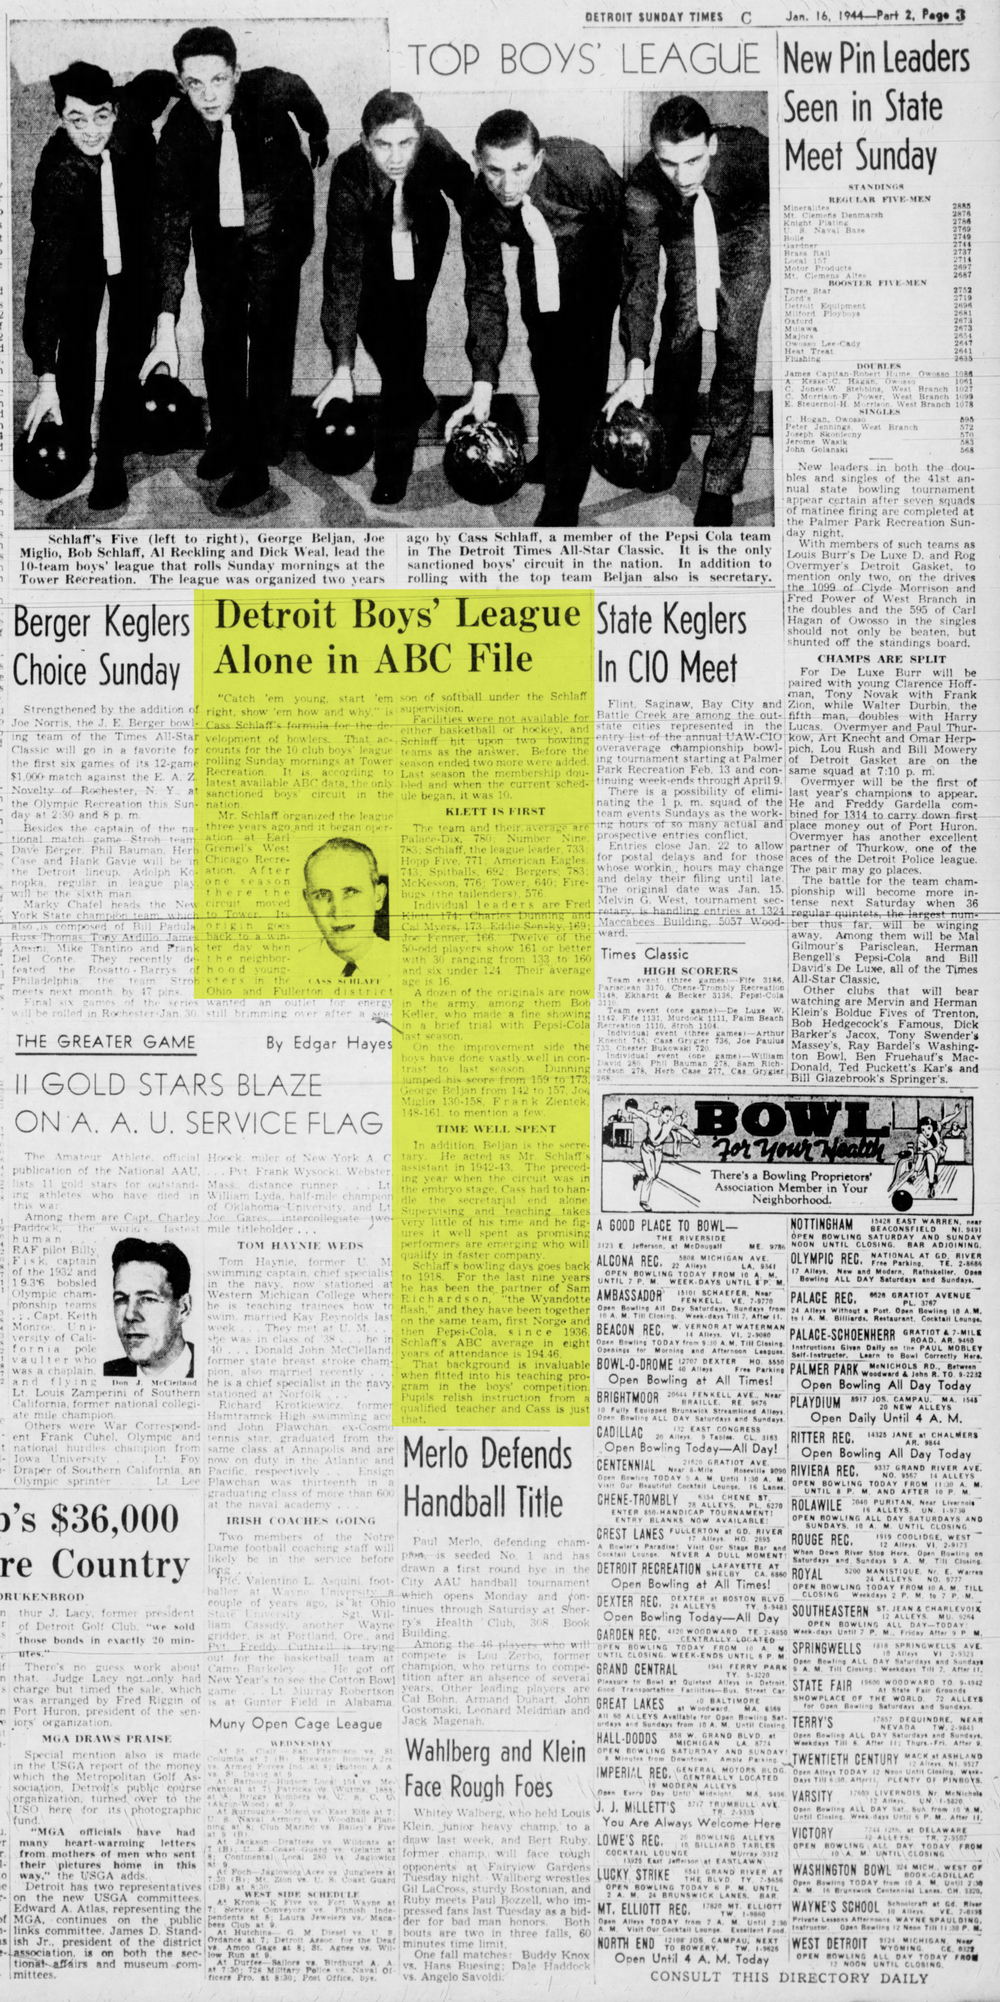 Tower Recreation - Detroit Evening Times Sun Jan 1944 Boys League (newer photo)